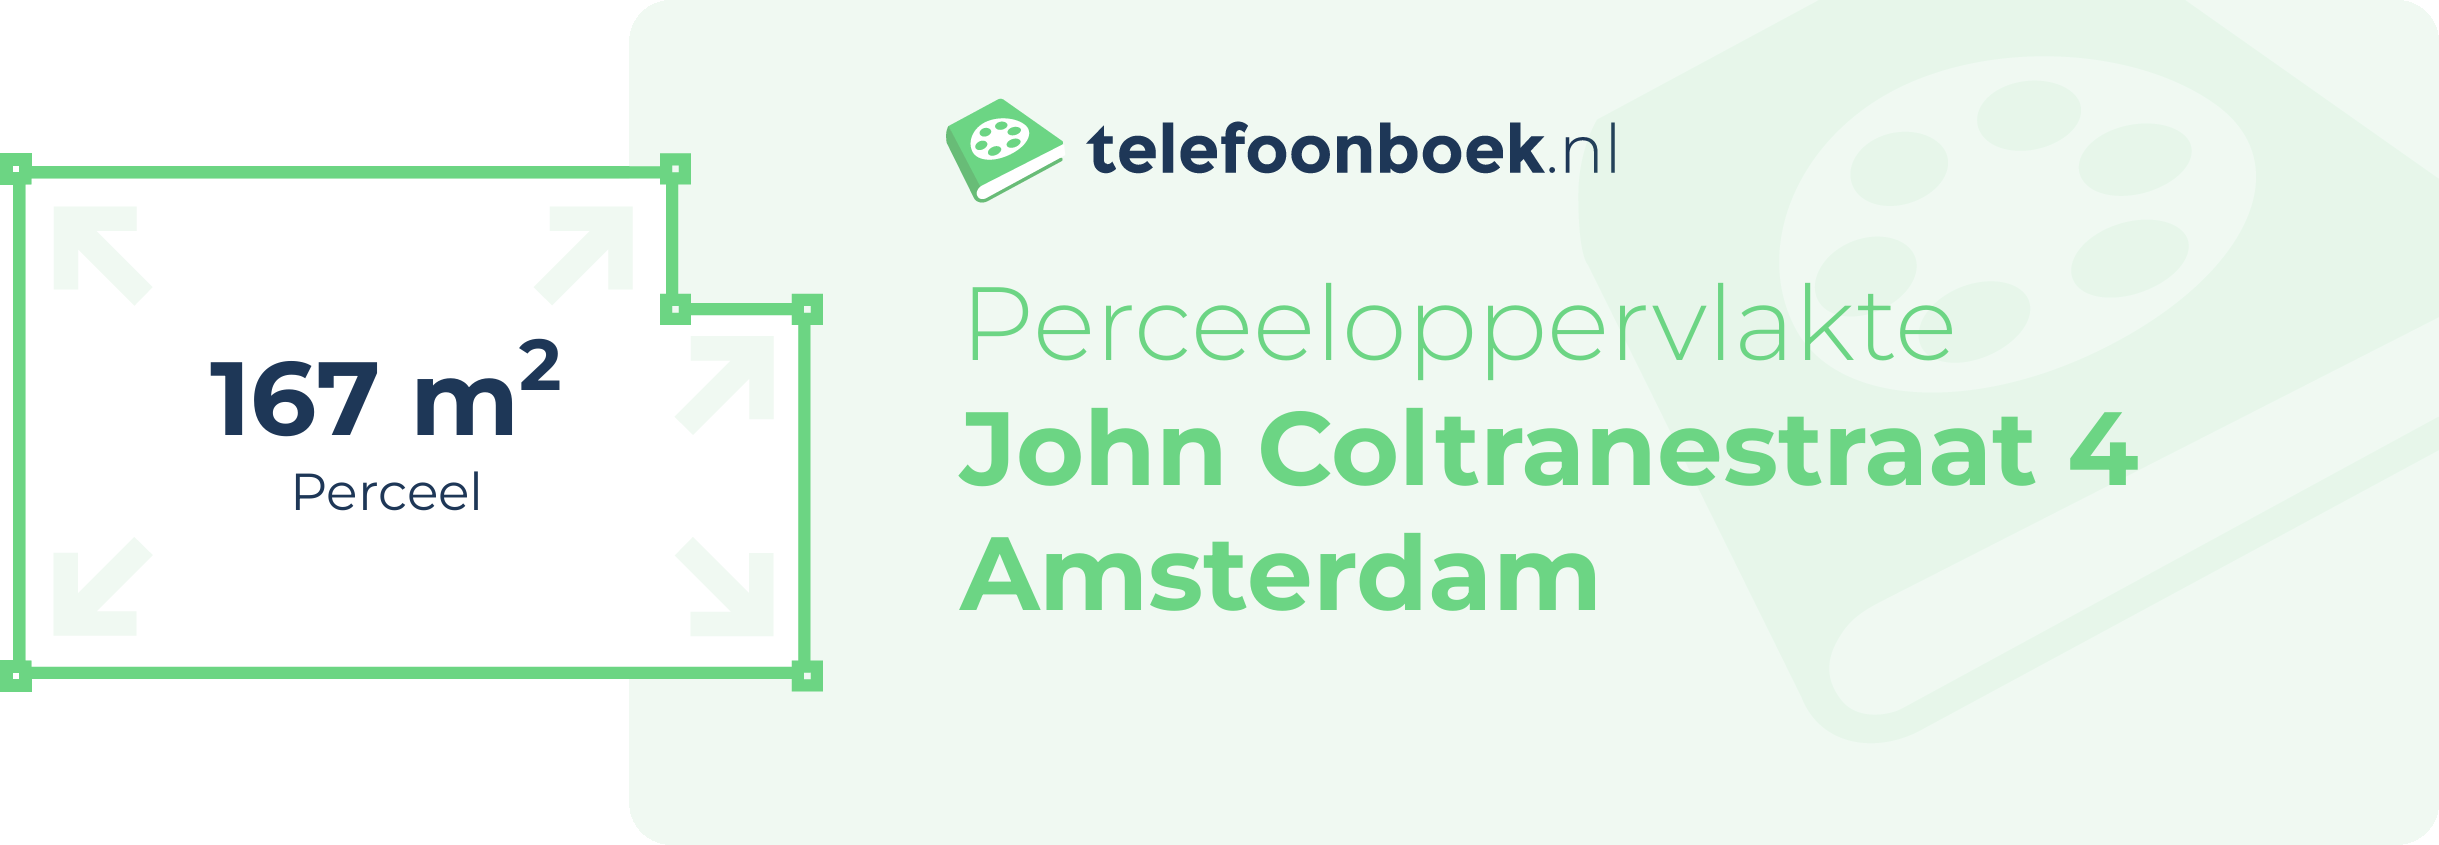 Perceeloppervlakte John Coltranestraat 4 Amsterdam